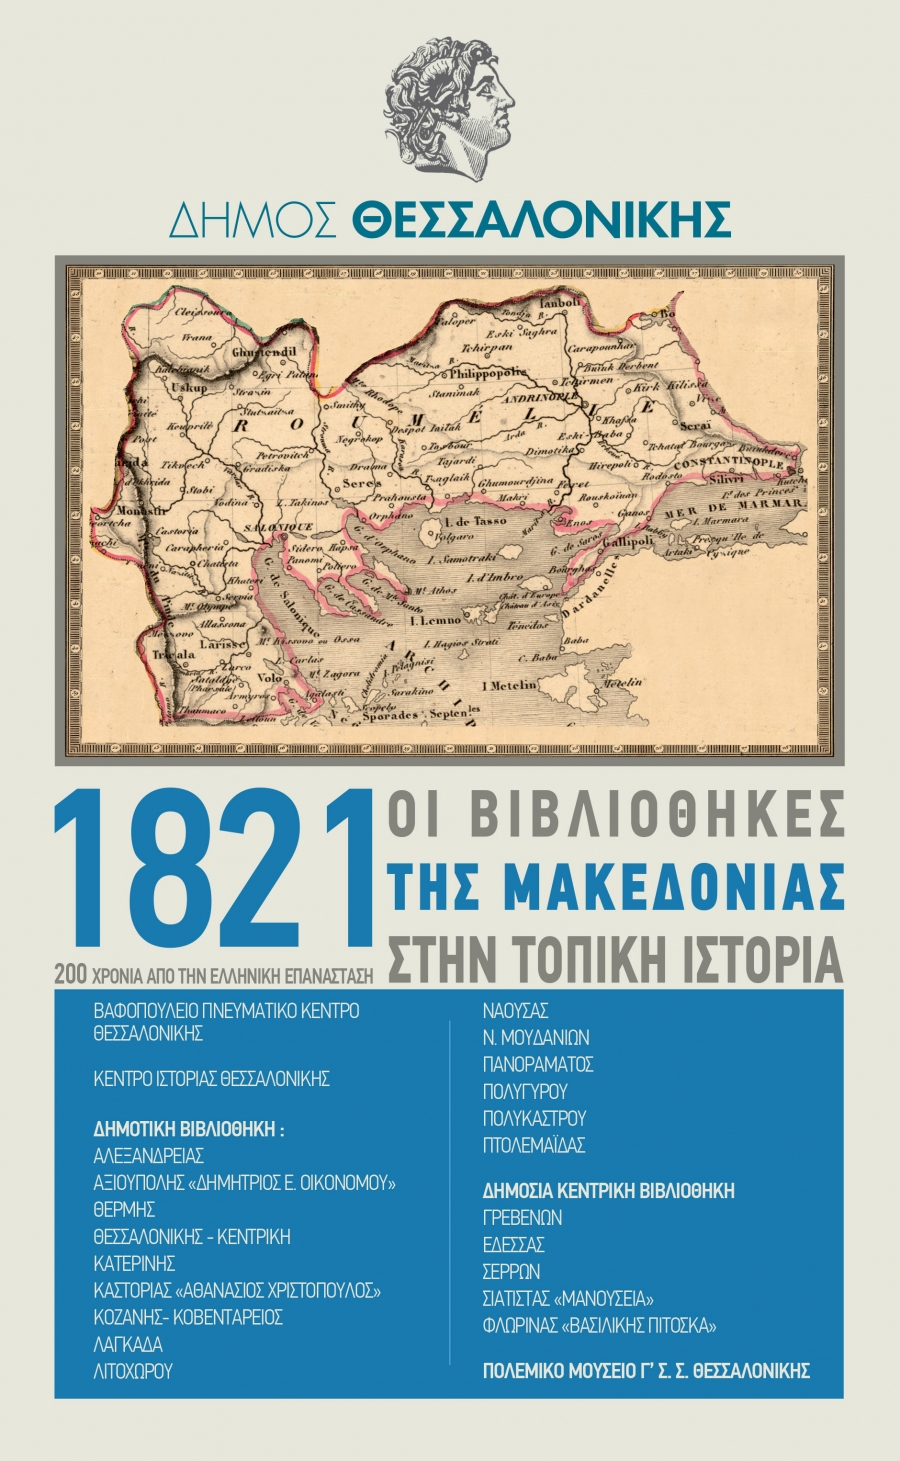 Οι βιβλιοθήκες της Μακεδονίας τιμούν την επέτειο των 200 χρόνων από την Ελληνική Επανάσταση